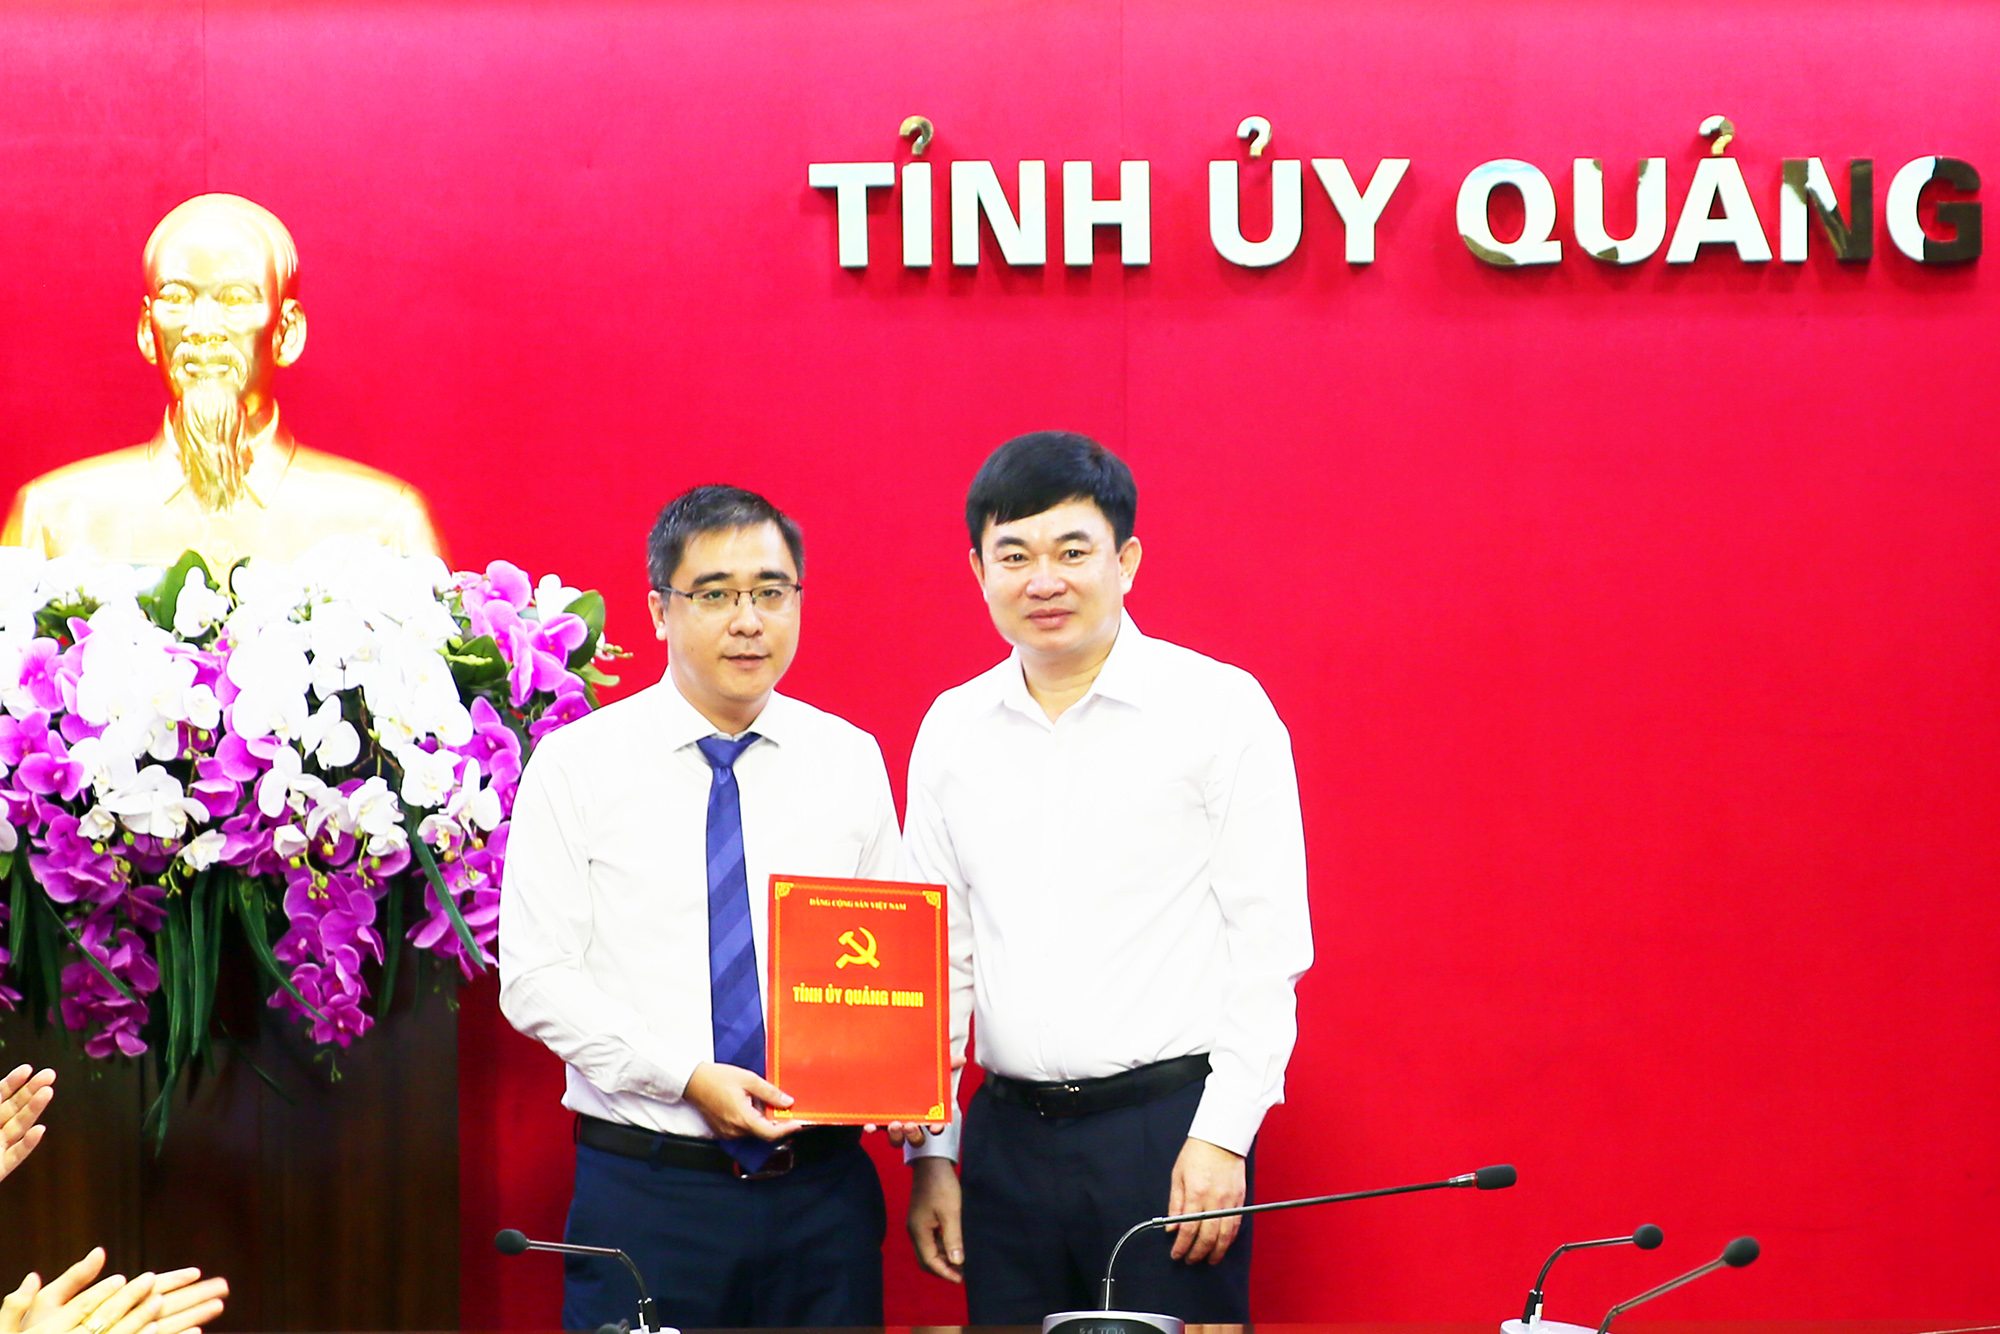 Đồng chí Ngô Hoàng Ngân, Phó Bí thư Tỉnh ủy, trao quyết định bổ nhiệm cho đồng chí Nguyễn Chí Thành.